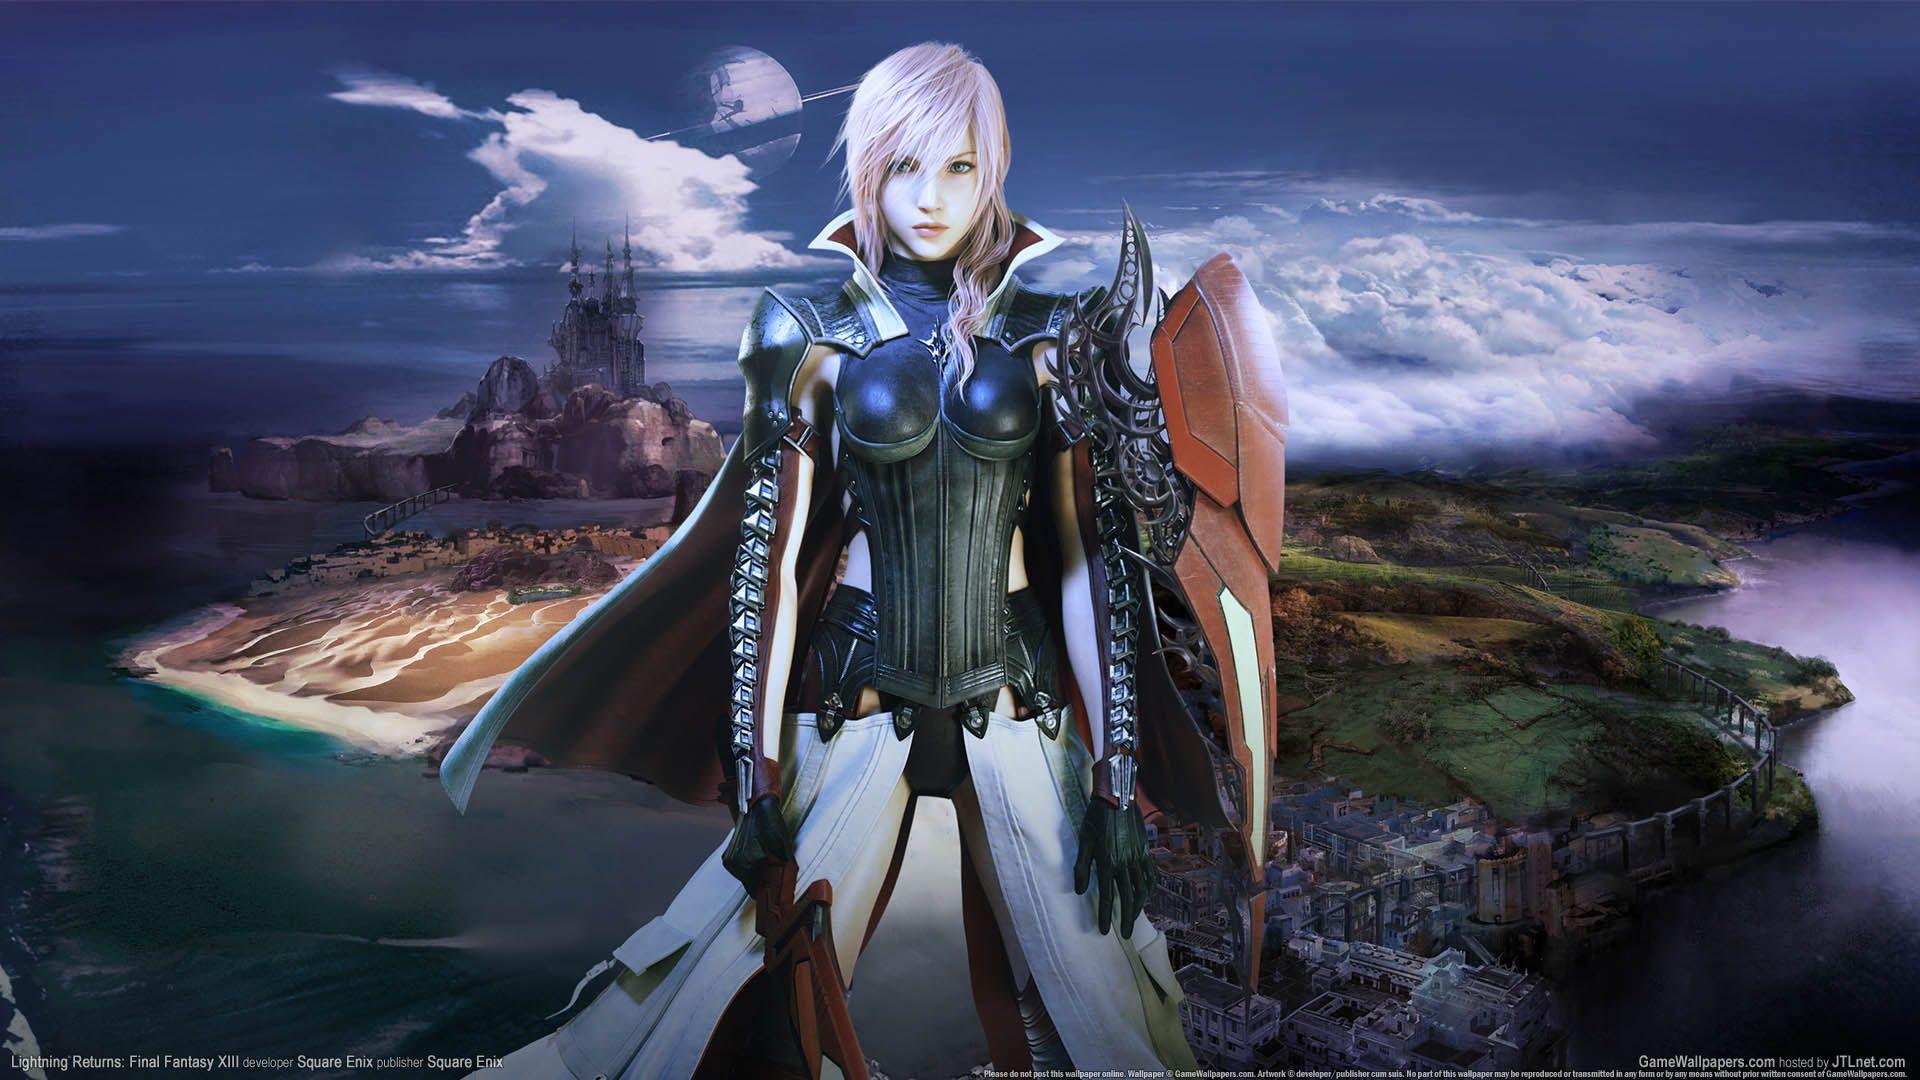 Lightning Returns: Final Fantasy XIII wallpaper or desktop